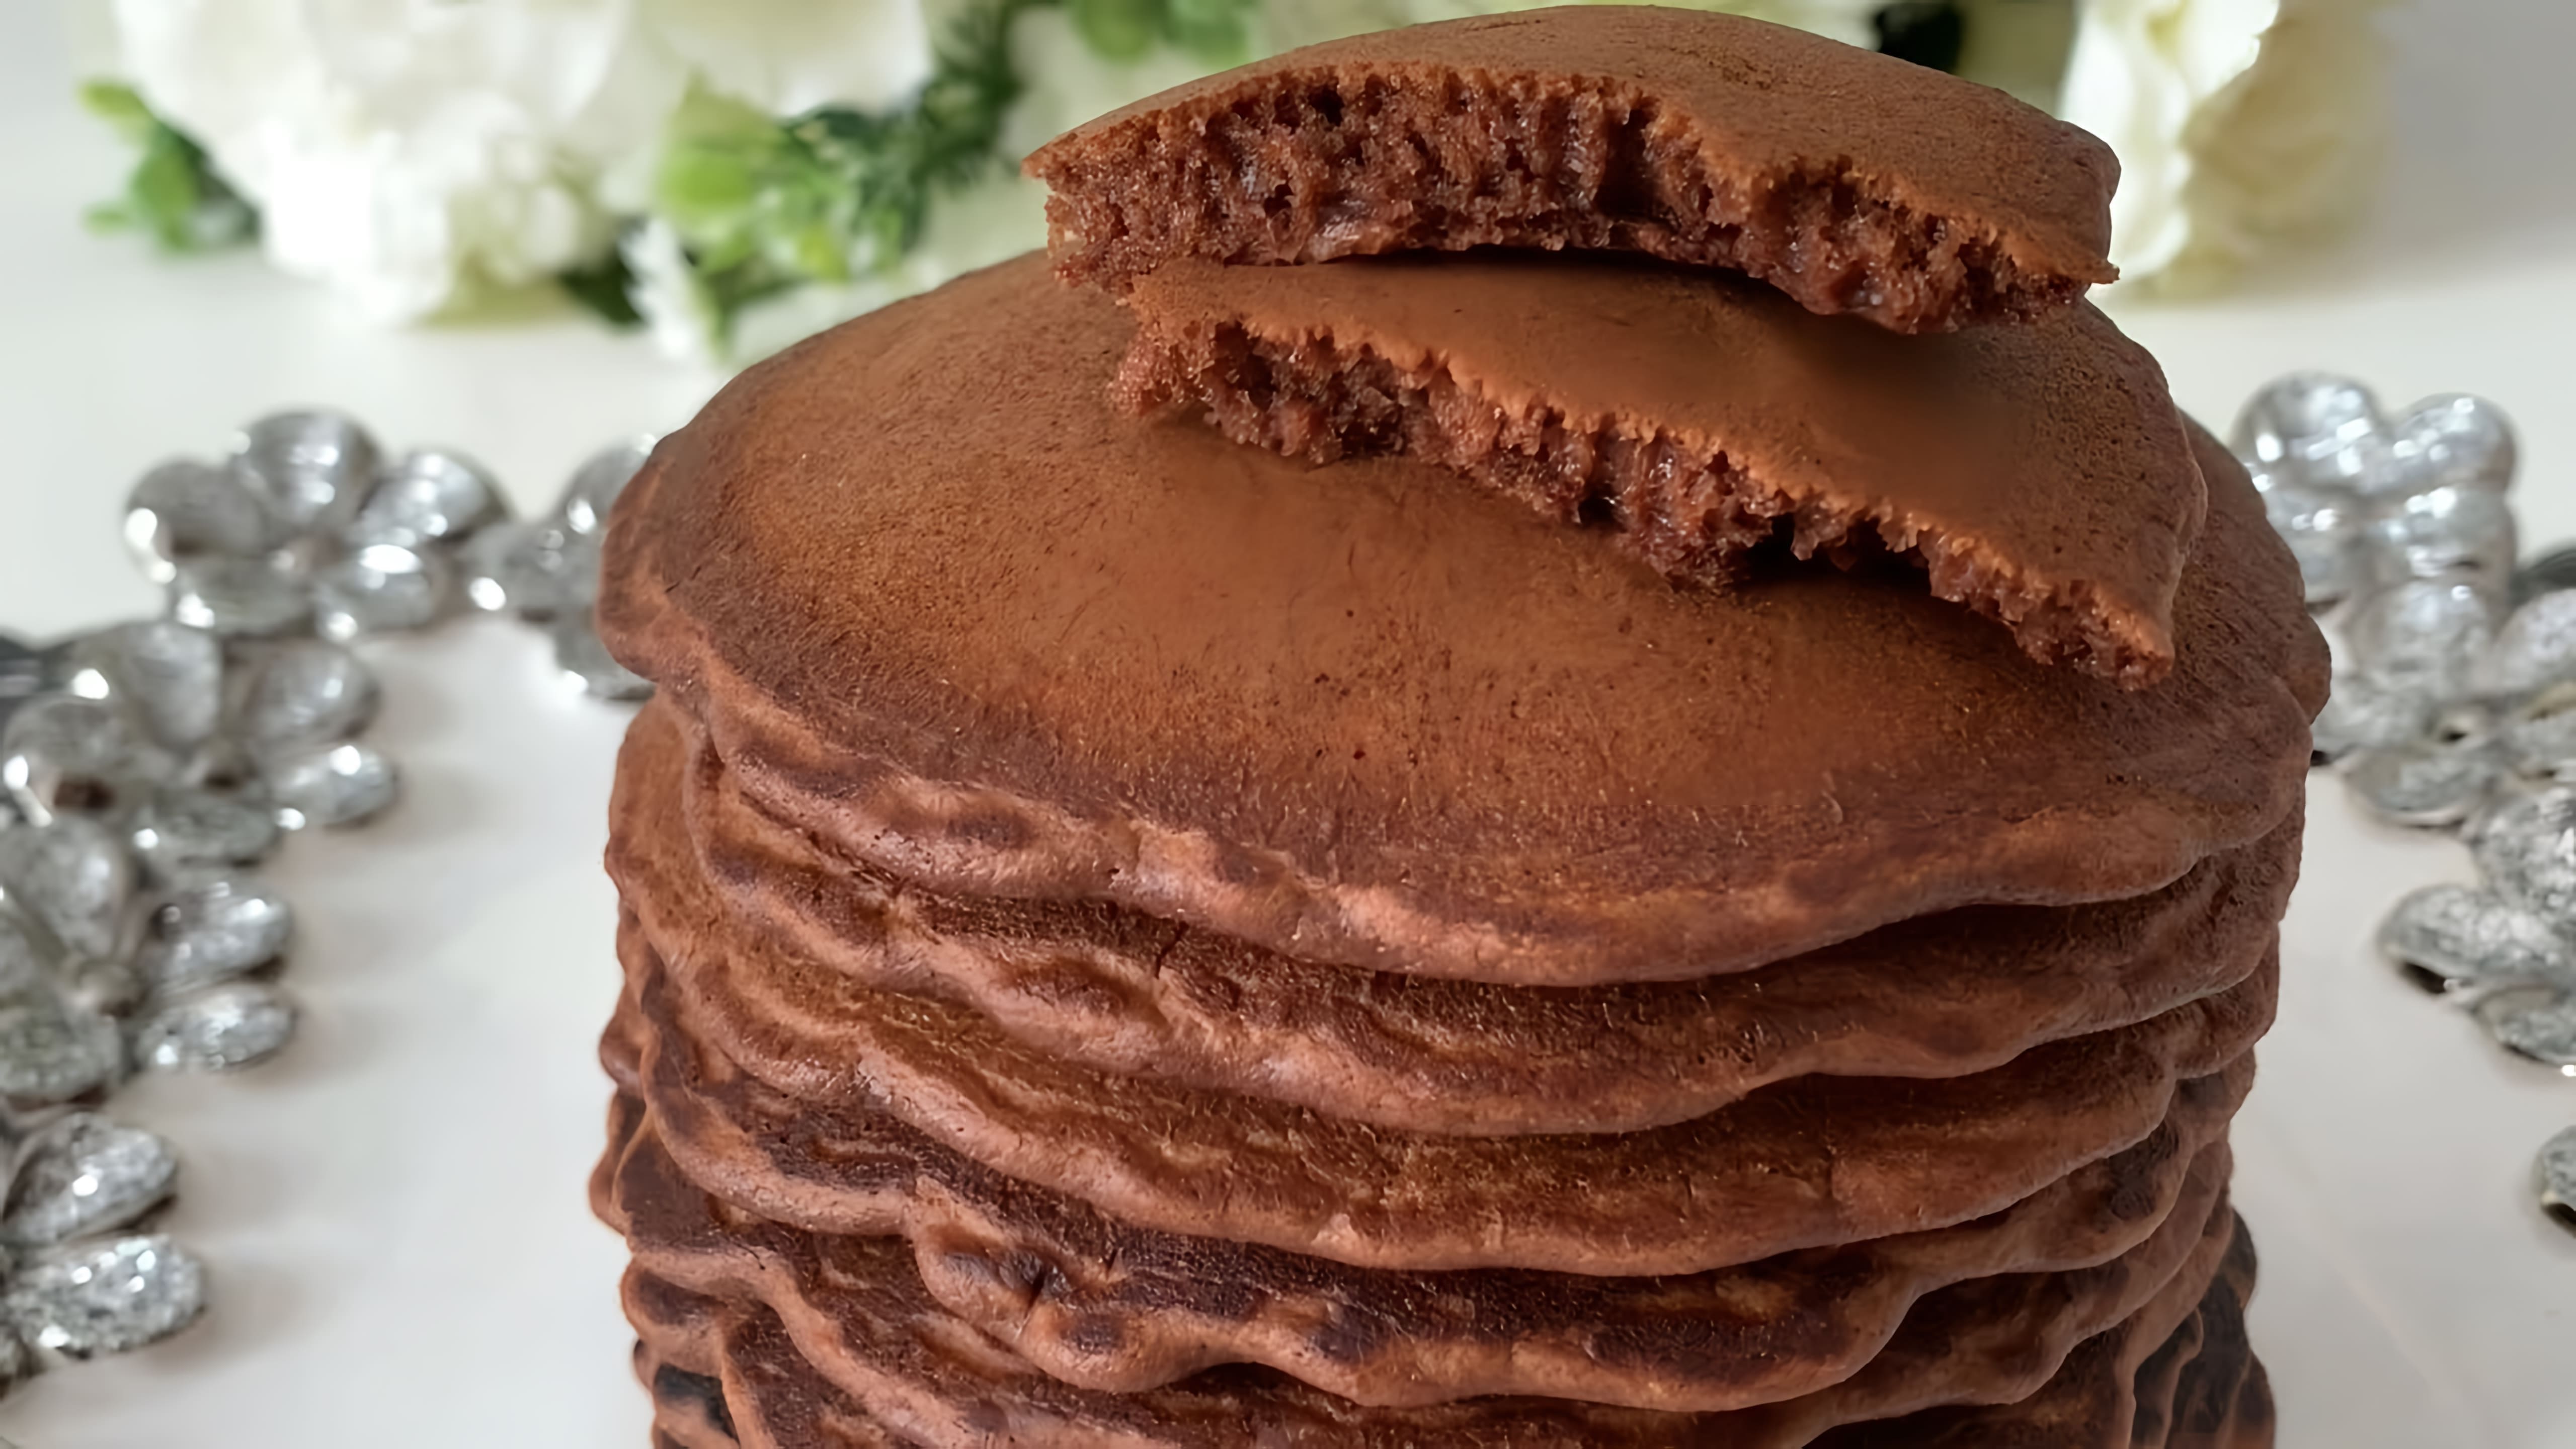 В этом видео демонстрируется рецепт шоколадных панкейков